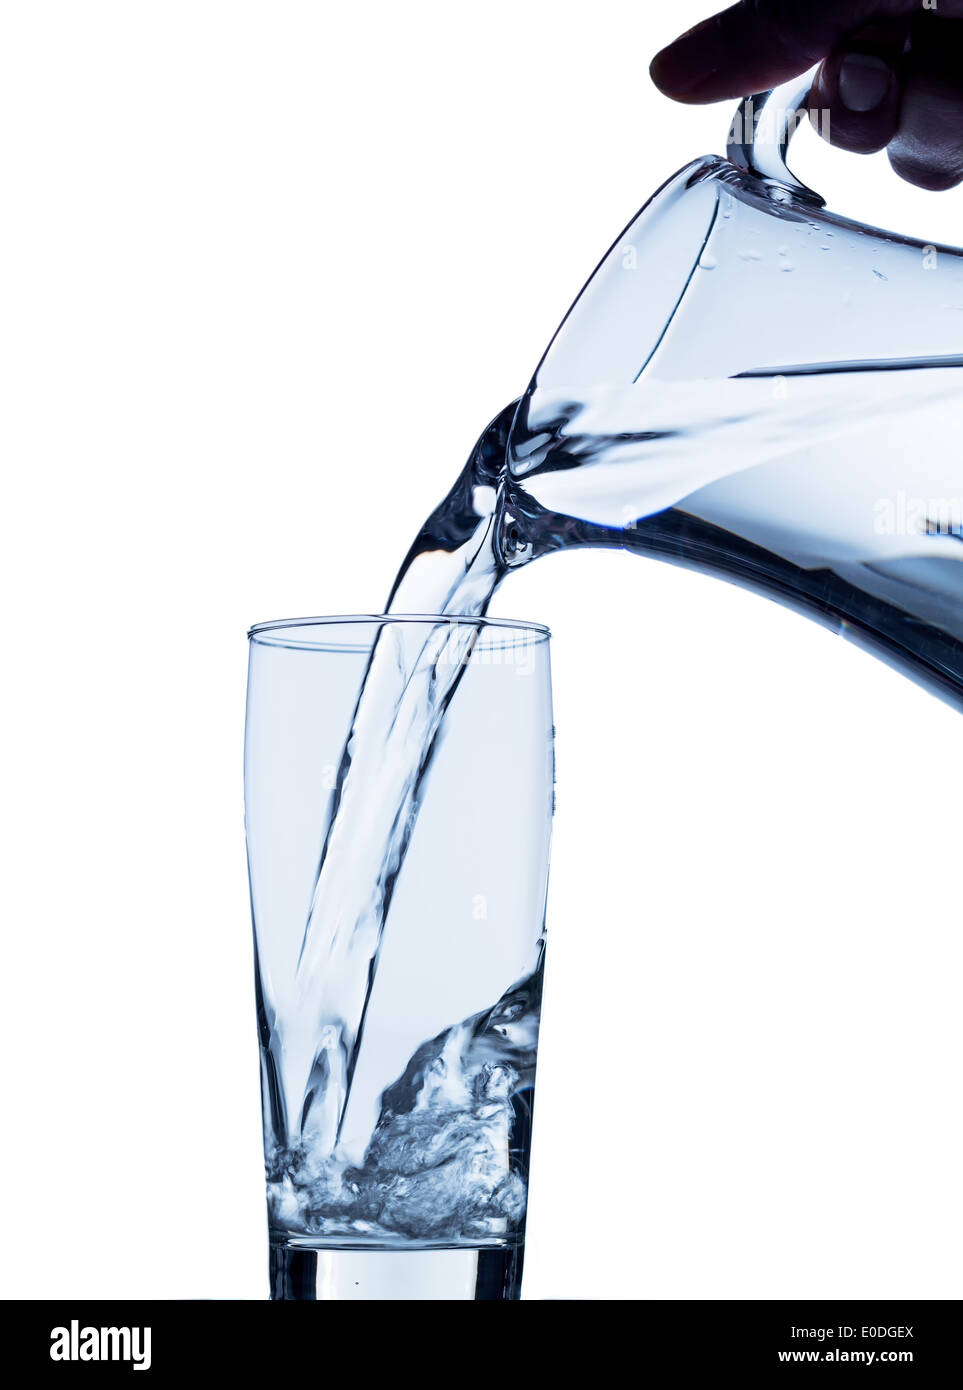 Acqua pura diventa in un bicchiere di acqua da una brocca eingeleert. Acqua fresca da bere, Reines Wasser wird in ein Wasserglas aus einem Foto Stock